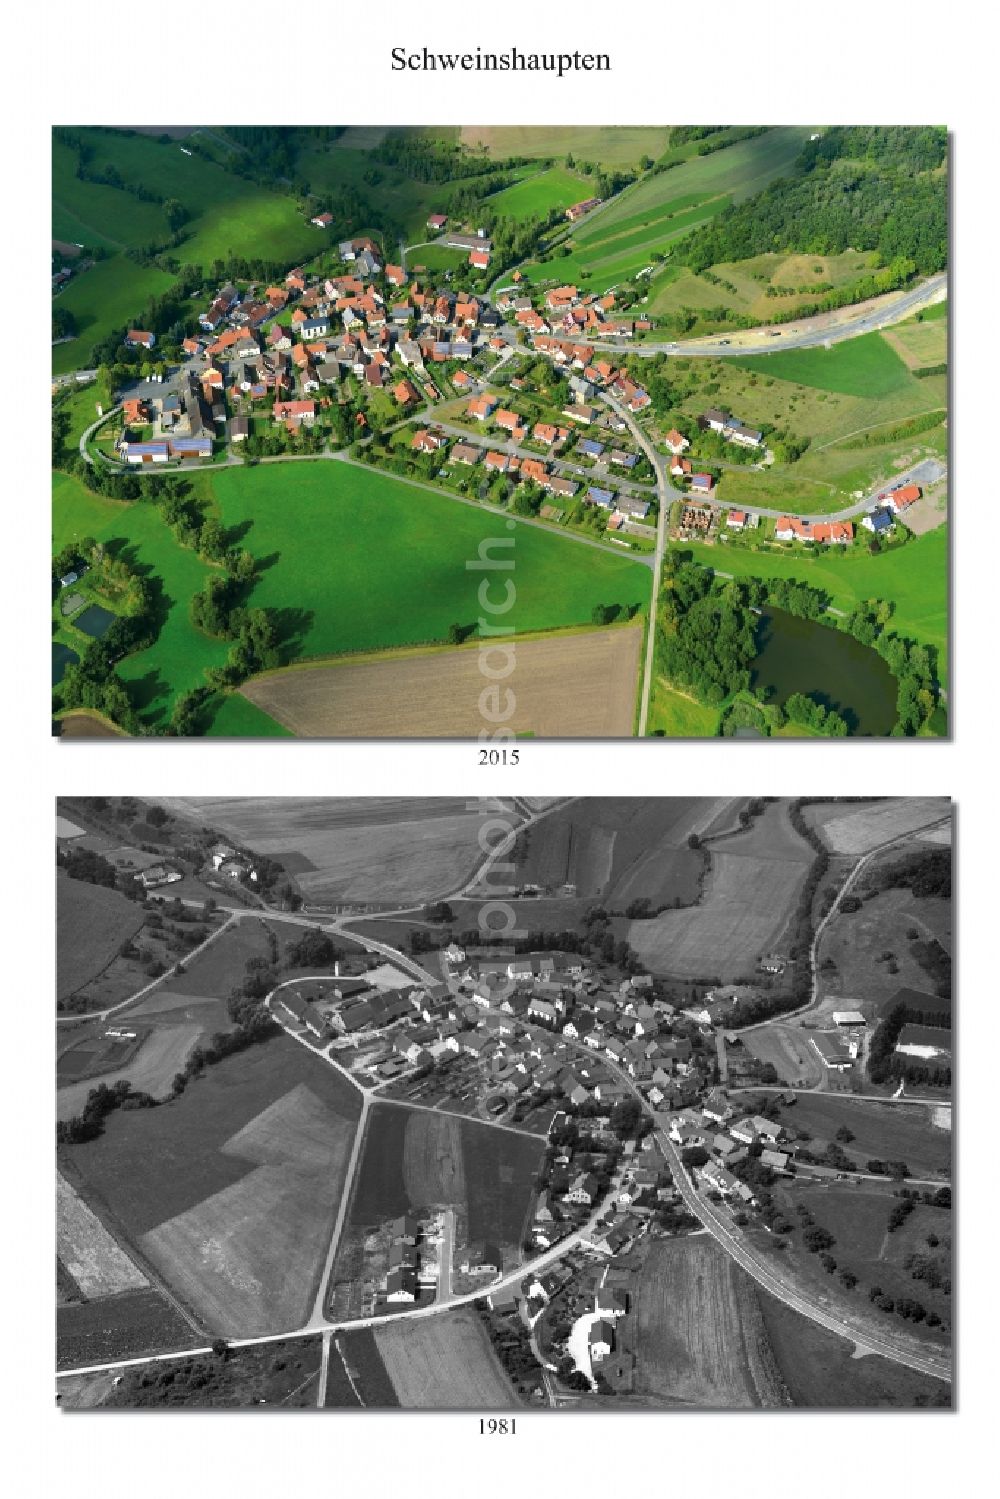 Aerial image Schweinshaupten - 1981 and 2015 village - view change of Schweinshaupten in the state Bavaria